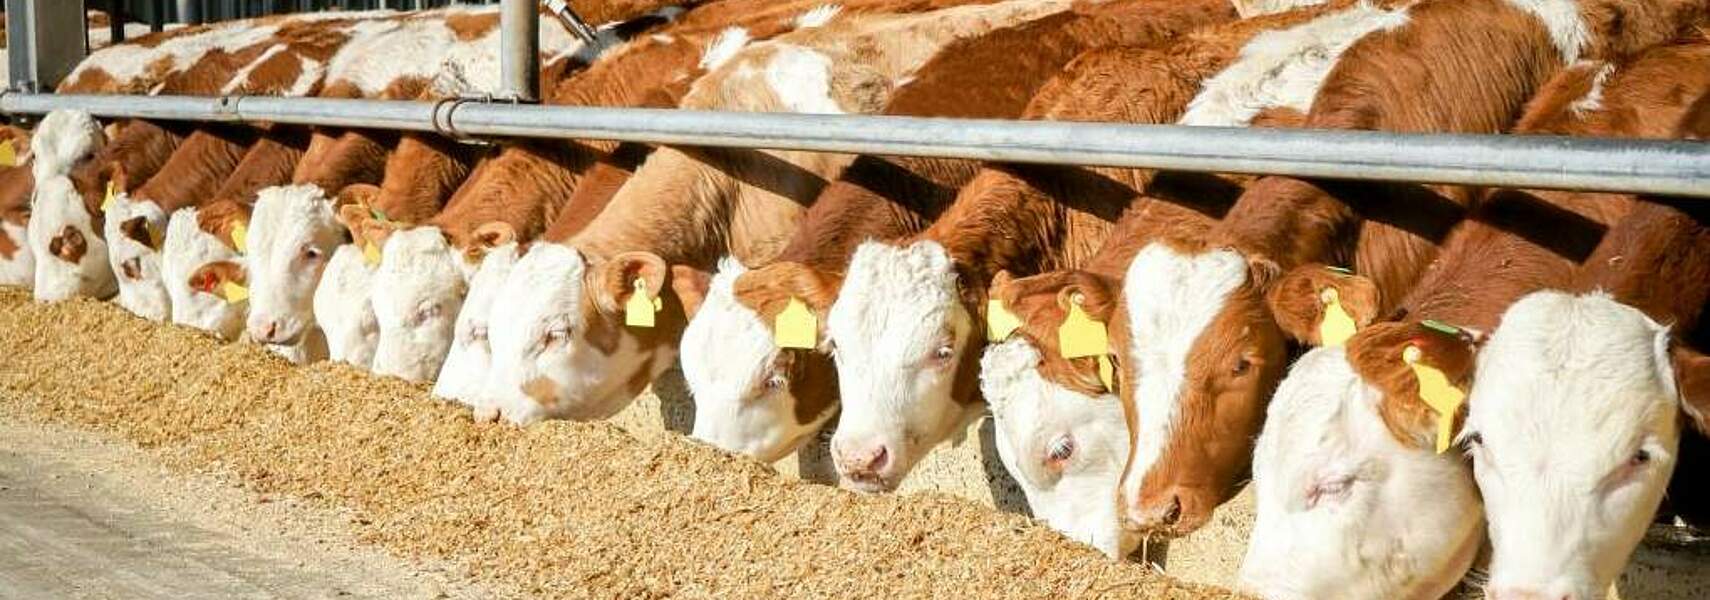 Tierwohl in der Rinderhaltung: Höhere Standards angemessen honorieren